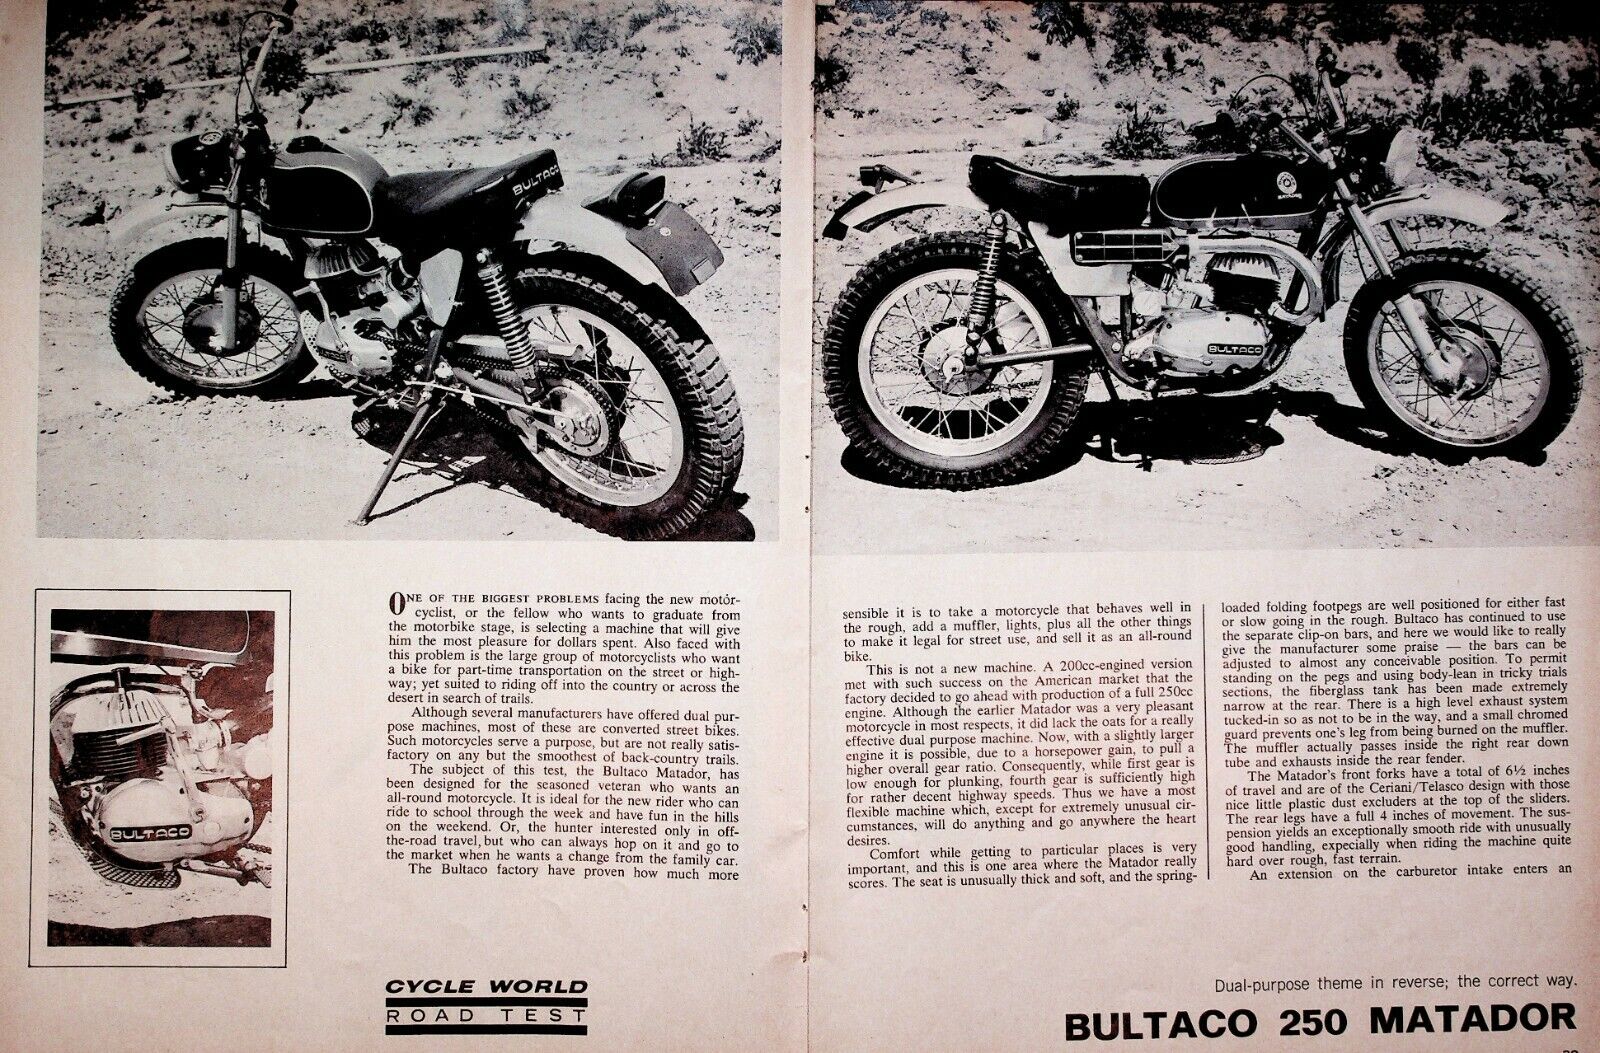 1966 Bultaco 250 Matador - 3-Page Vintage Motorcycle Road Test Article